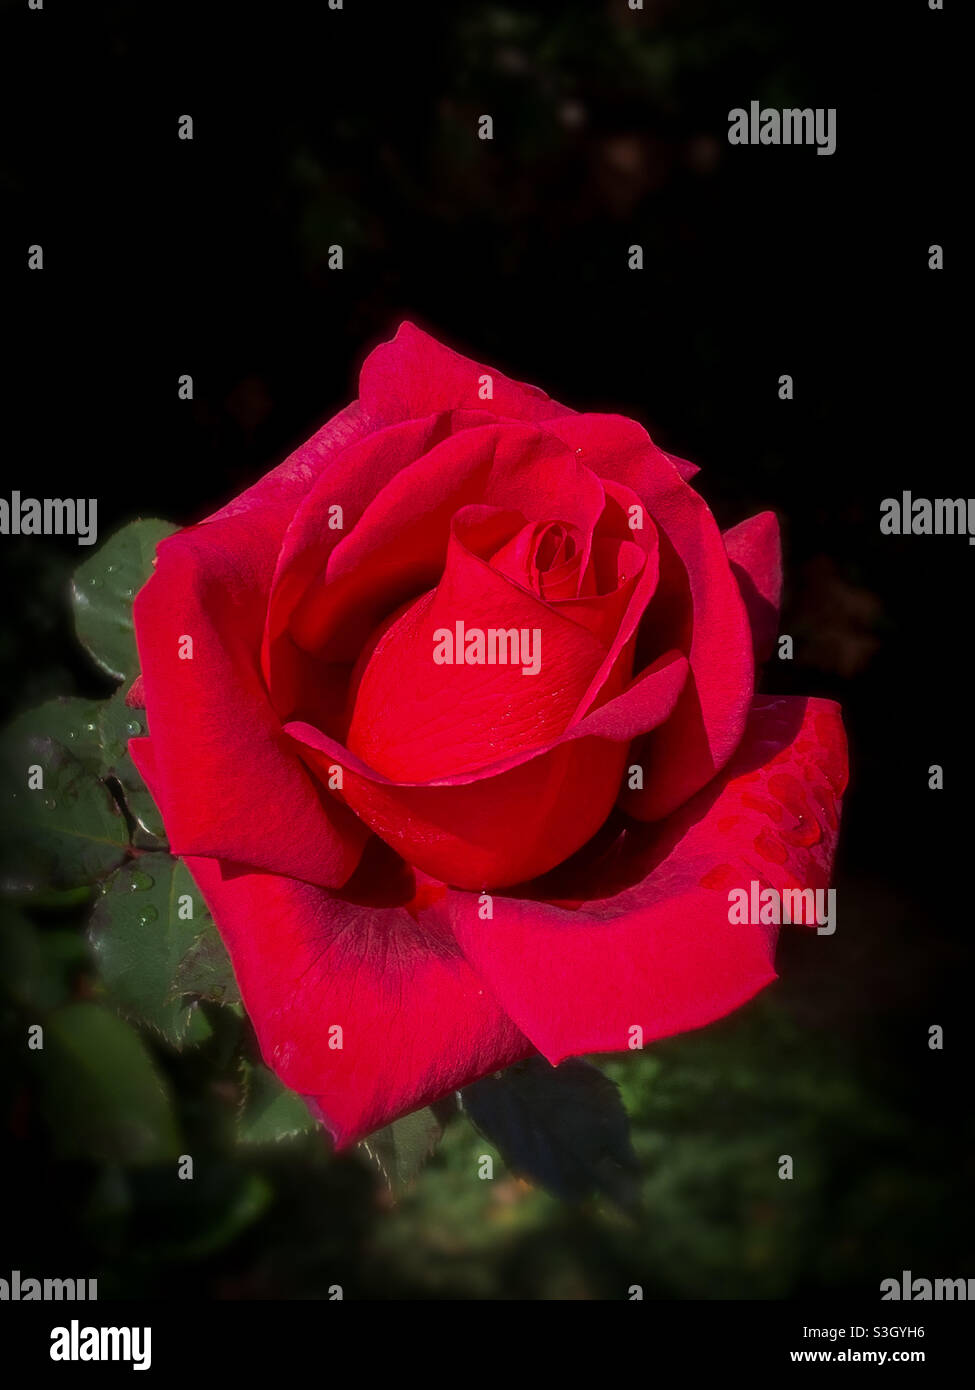 Bellissima rosa rossa che si apre con gocce d'acqua sui petali con sfondo scuro Foto Stock